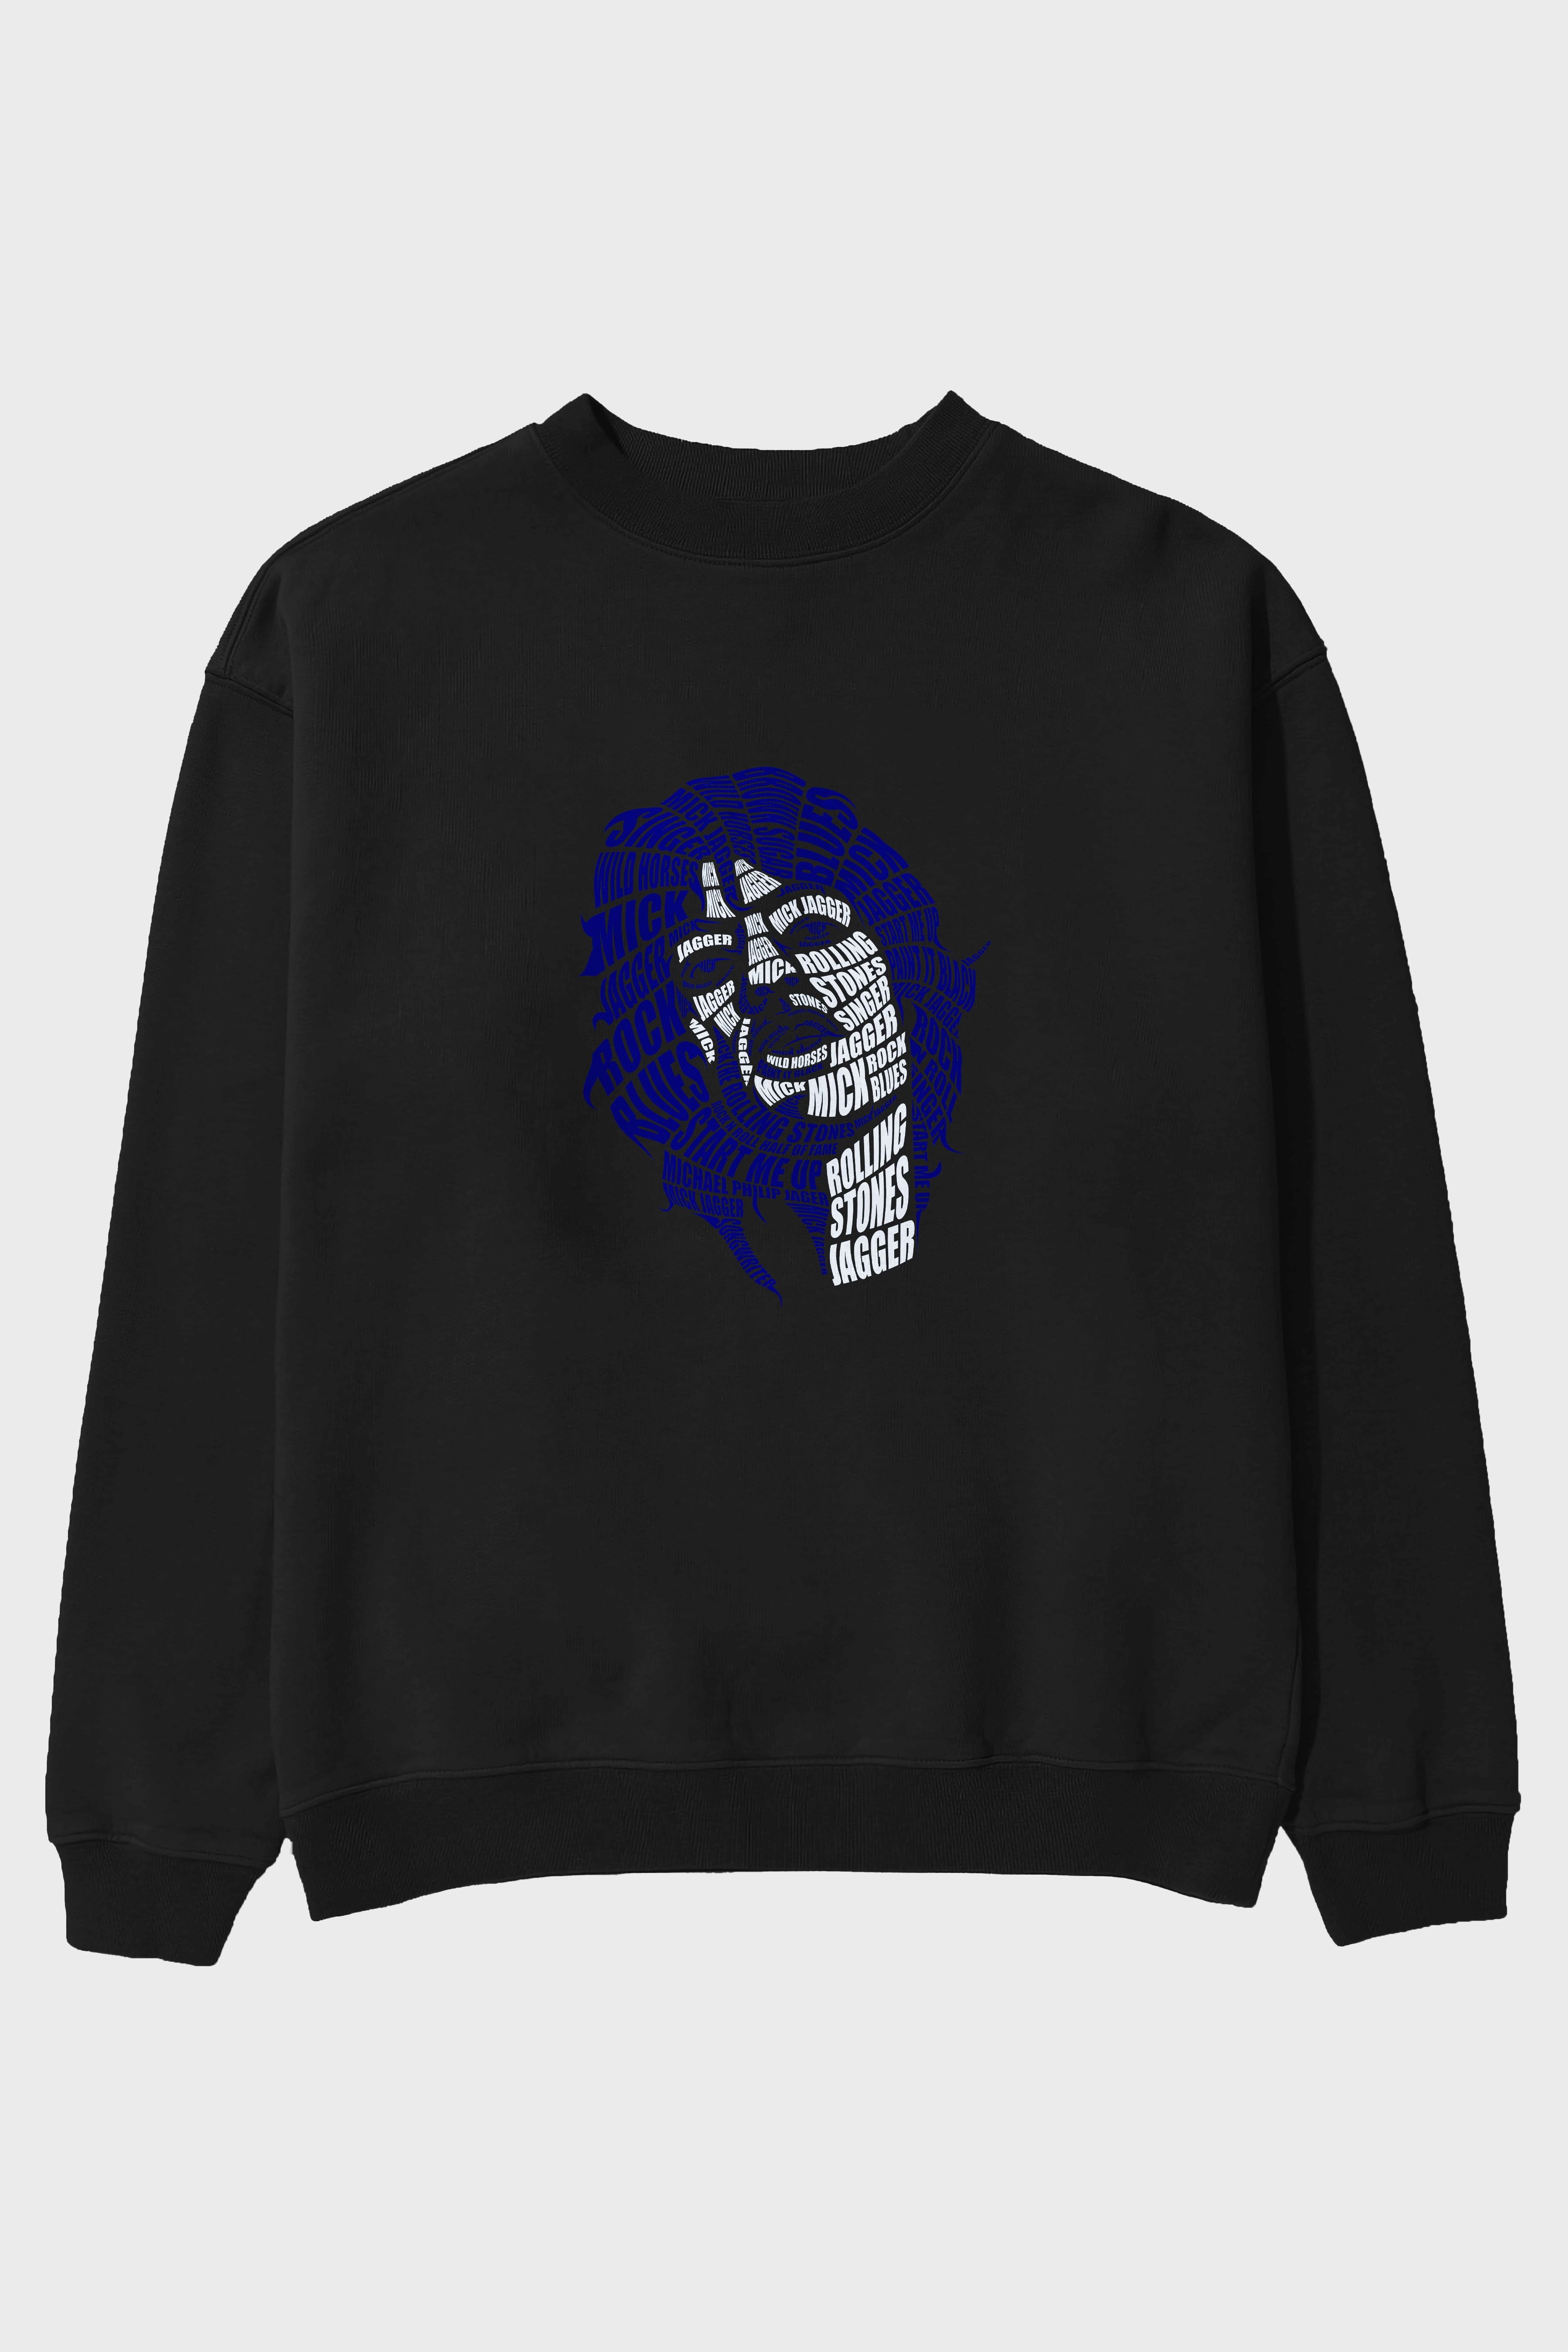 Mick Jagger Calligram Ön Baskılı Oversize Sweatshirt Erkek Kadın Unisex